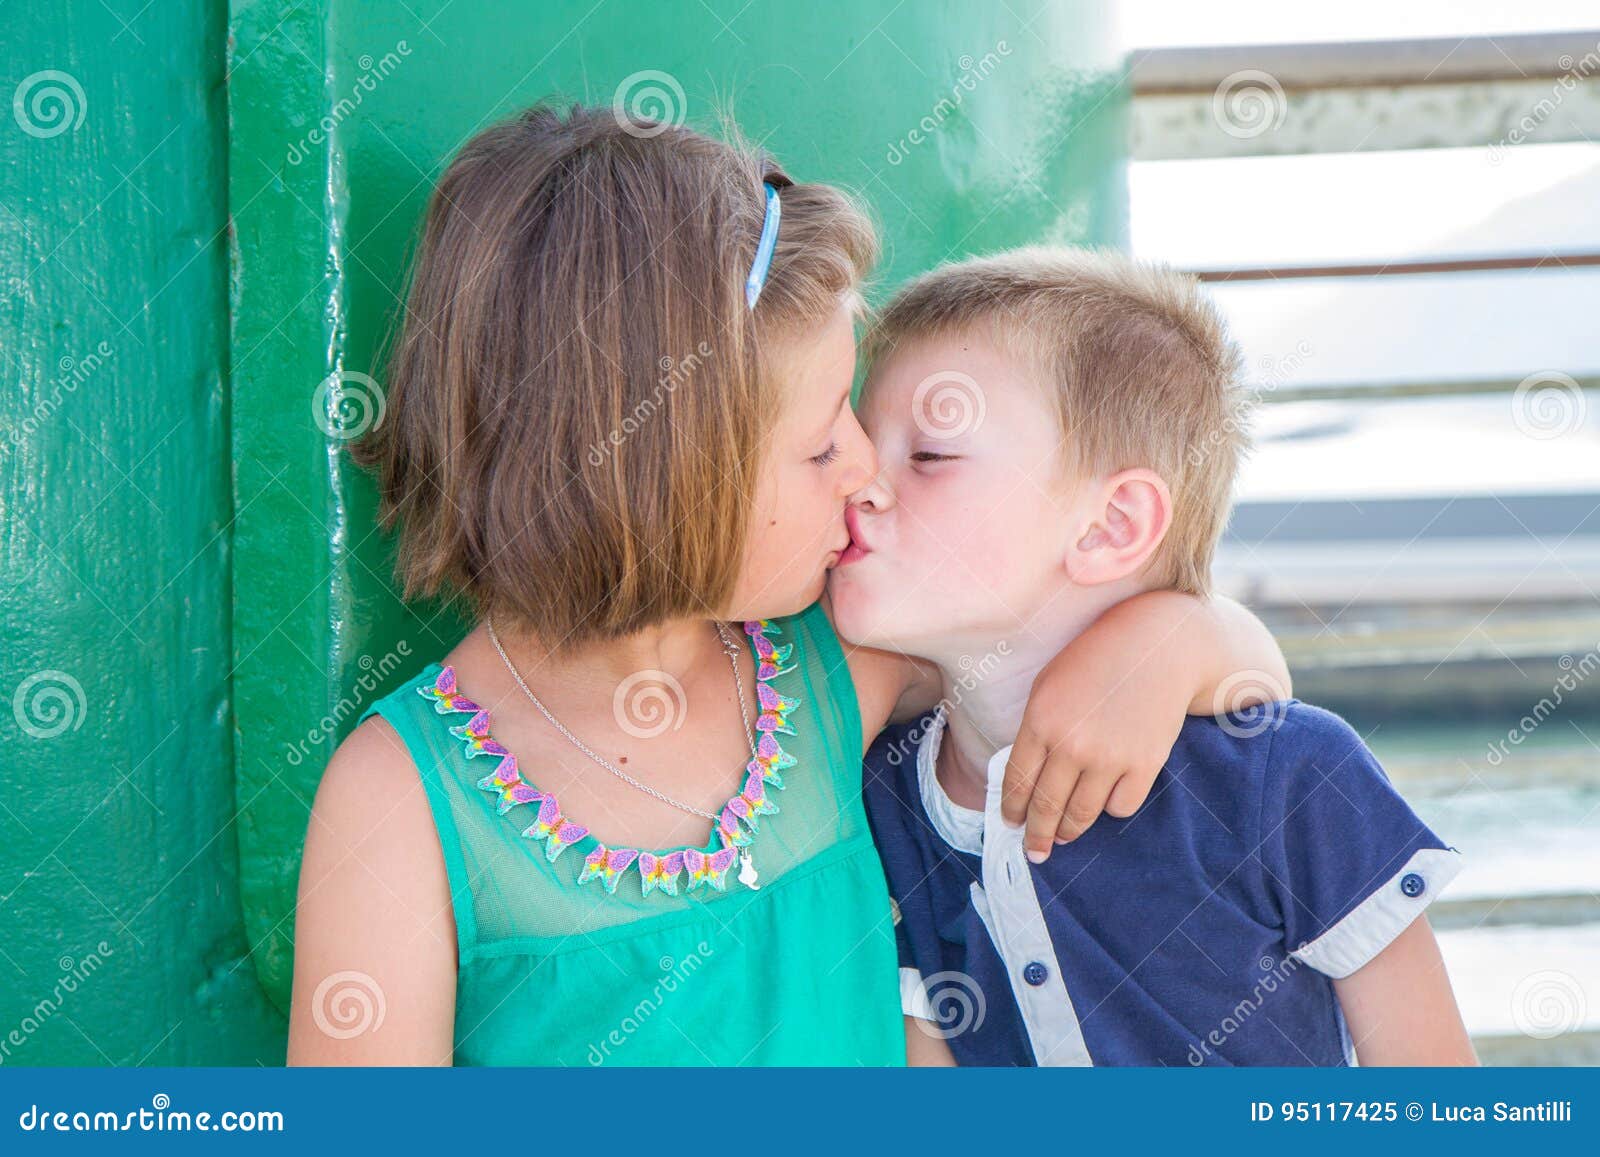 Папа лизал рассказ. Поцелуй братаси сестры. Поцелуй братьев. Детский поцелуй в губы брата и сестры. Поцелуй девочек сестричек.